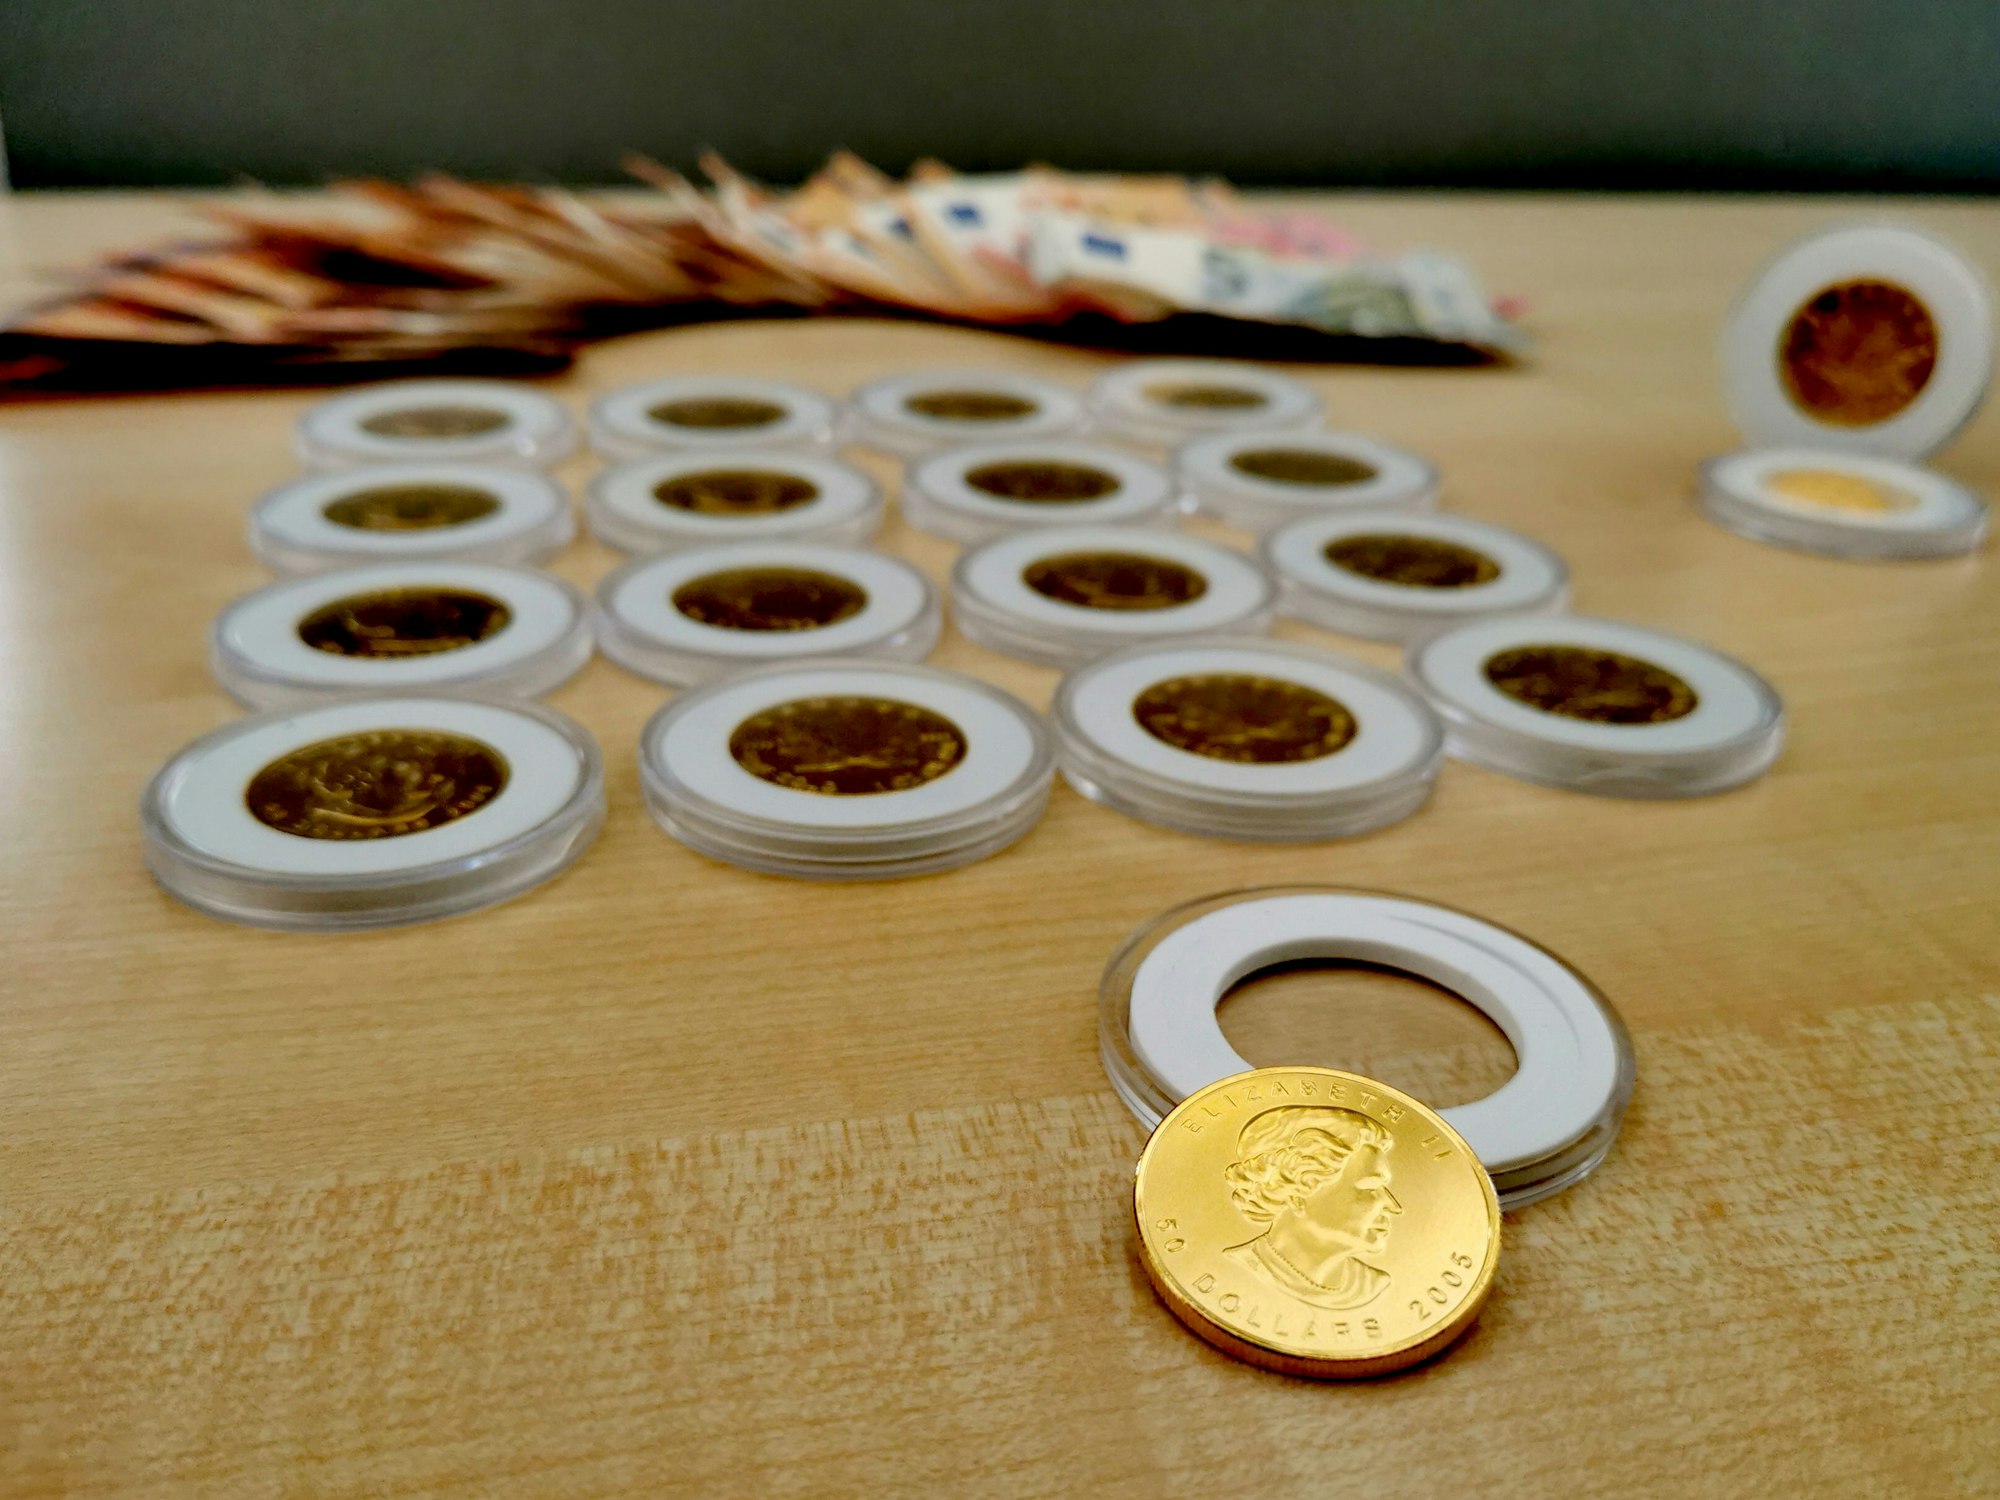 Gefälschte Goldmünzen und mehrere Hundert Euro Bargeld liegen auf einem Tisch.